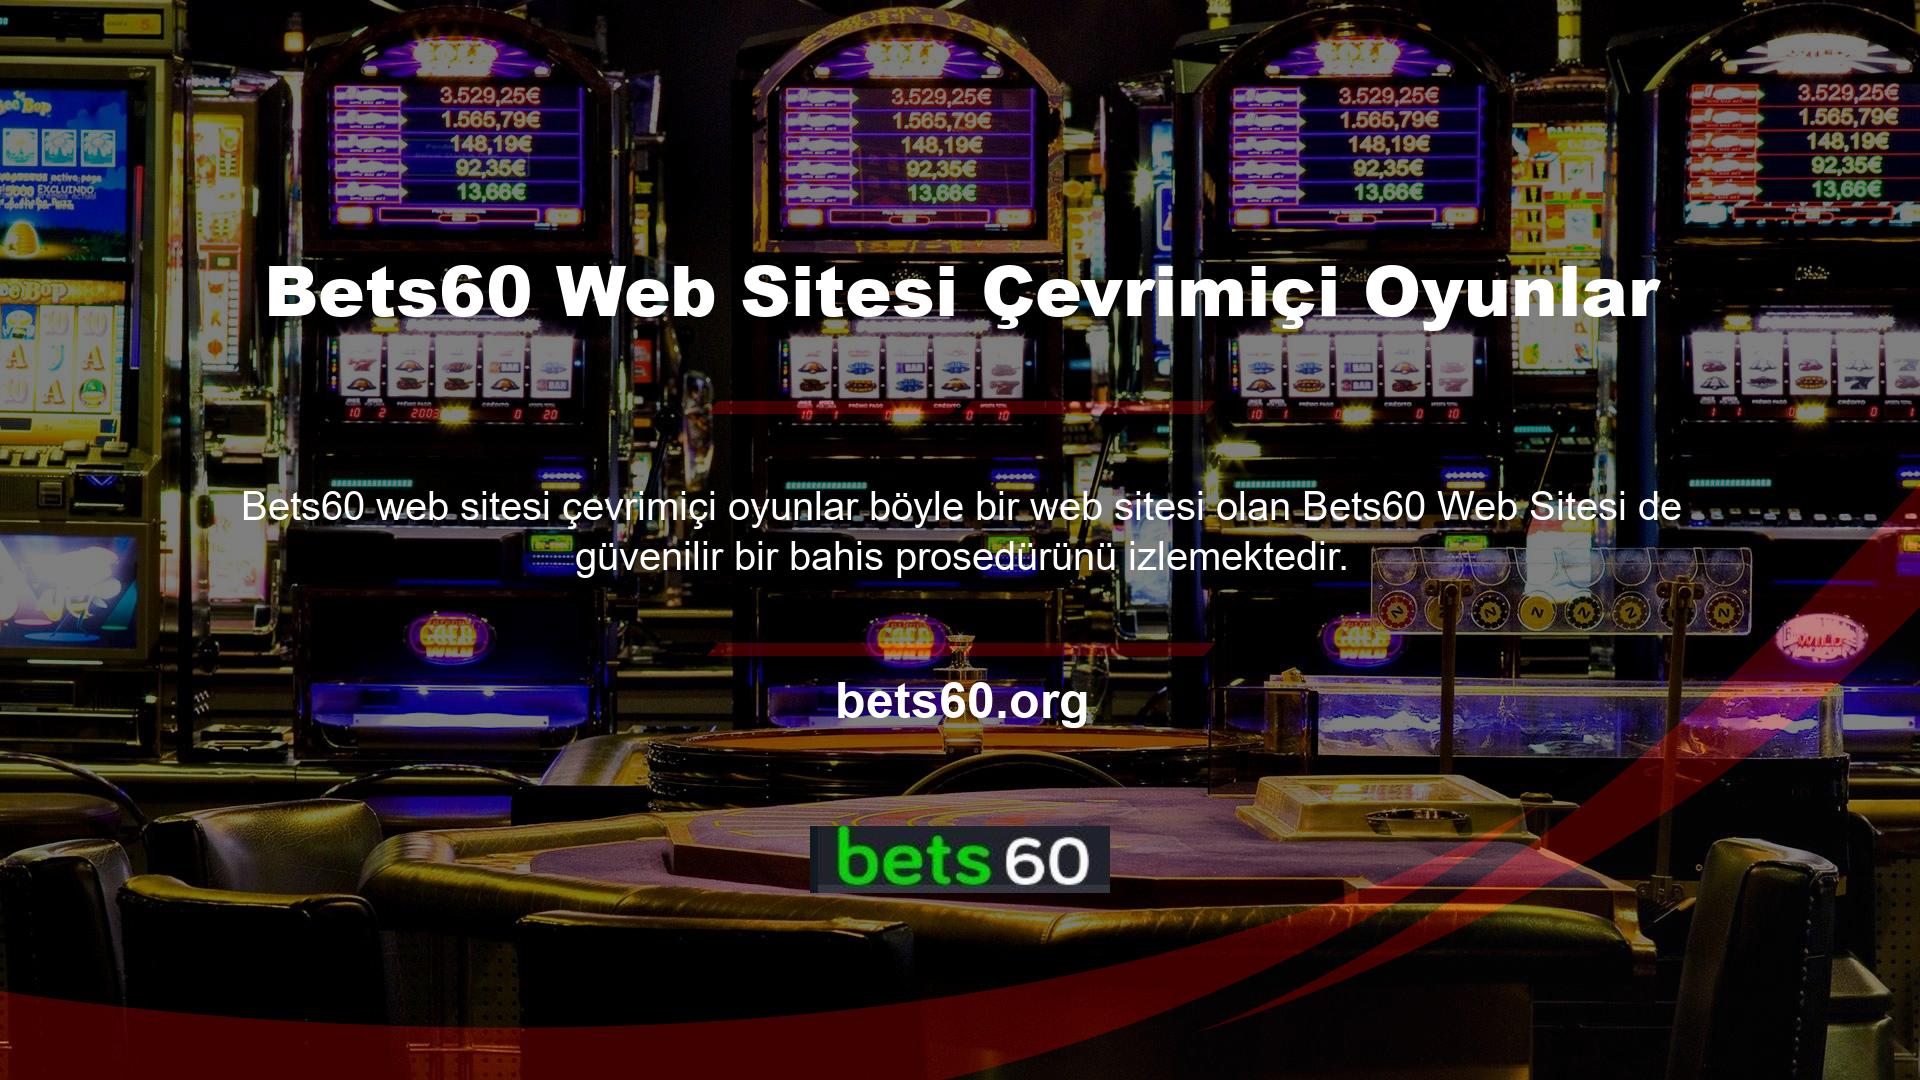 Sahada etkilemek istiyorsanız Bets60 web sitesinde hem görüntüleme seçenekleri hem de güvenilir çevrimiçi bahis programları bulunmaktadır